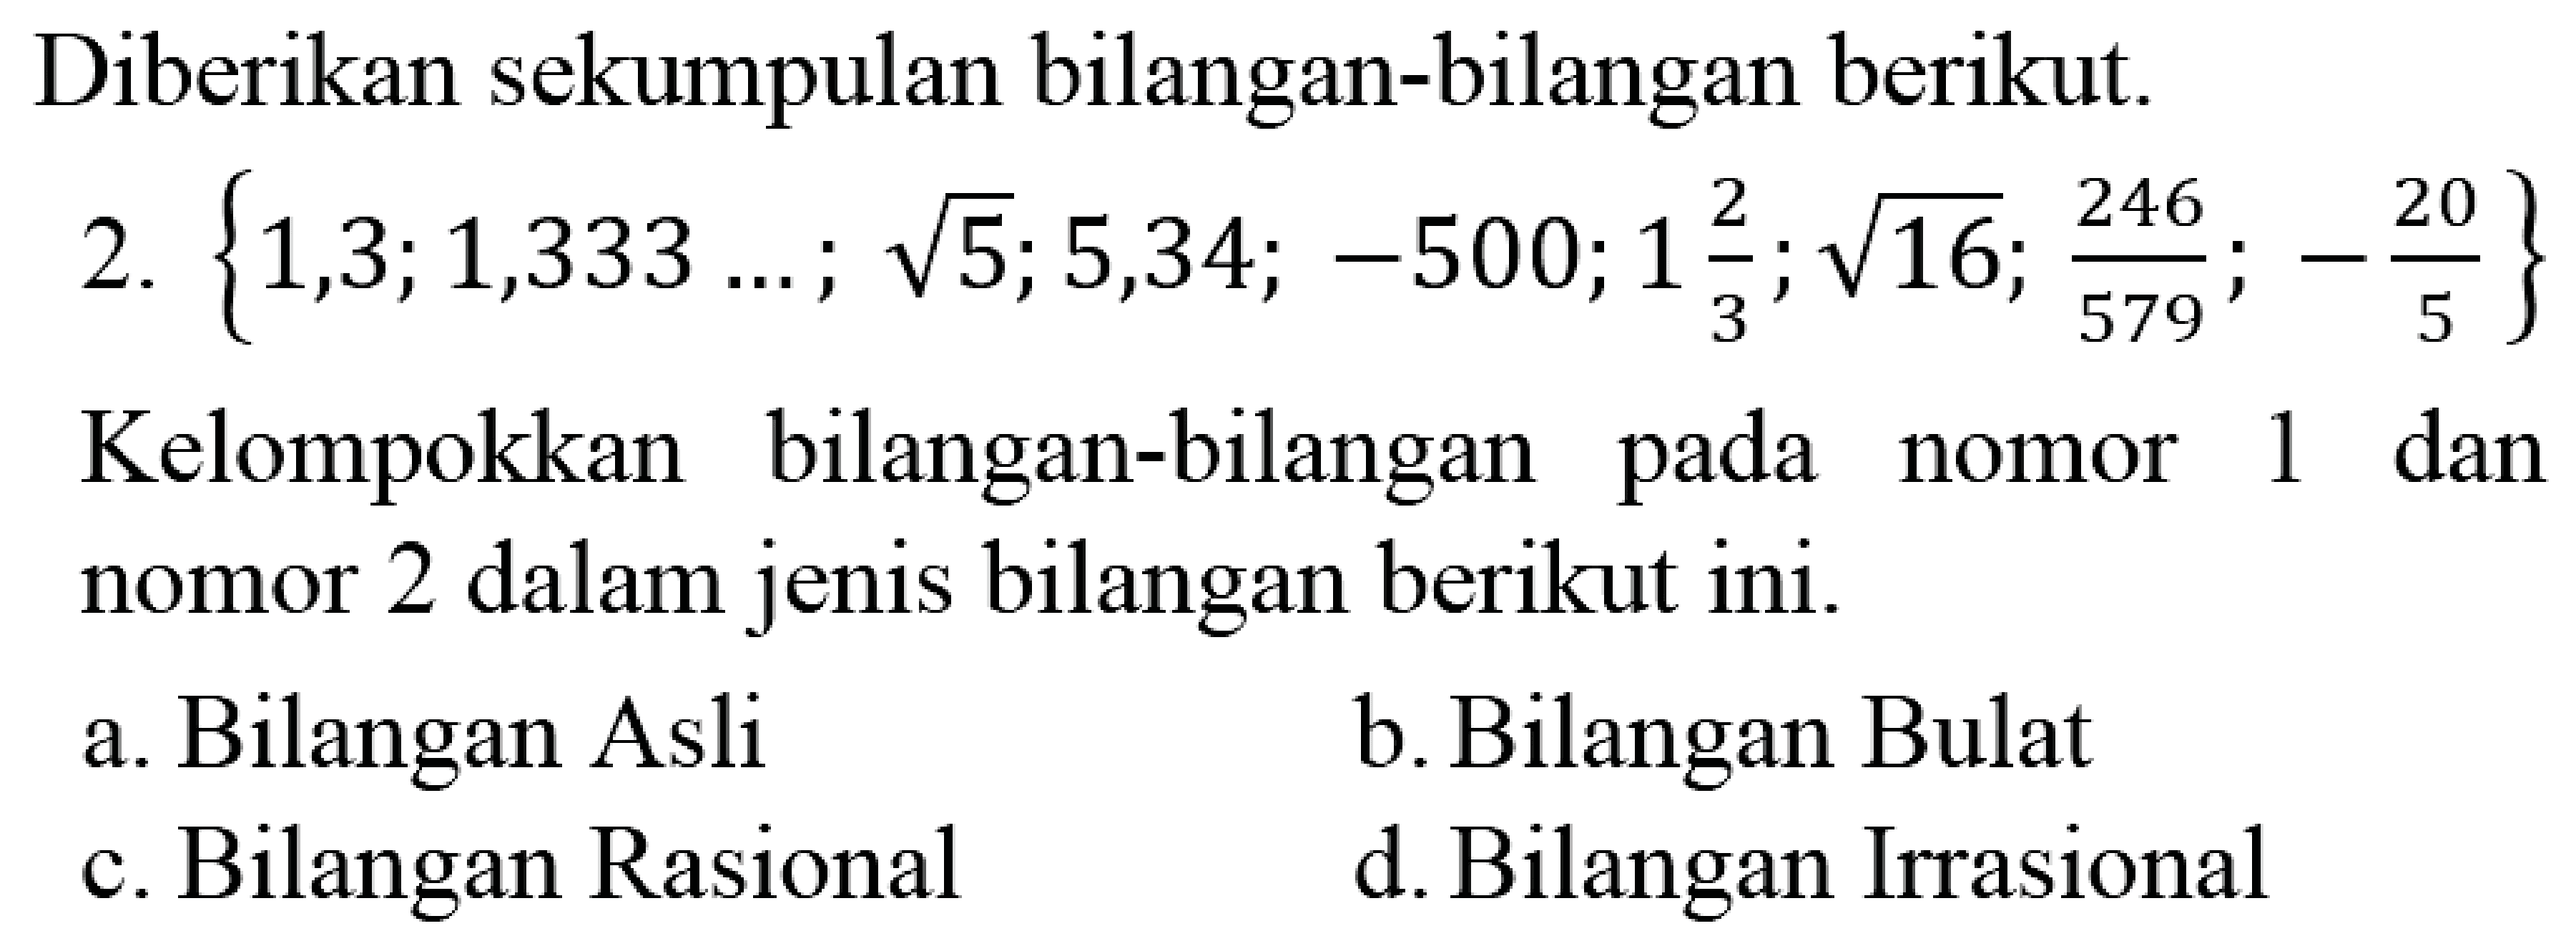 Diberikan sekumpulan bilangan-bilangan berikut.
2.  {1,3 ; 1,333 ... ; akar(5) ; 5,34 ;-500 ; 1 (2)/(3) ; akar(16) ; (246)/(579) ;-(20)/(5)} 
Kelompokkan bilangan-bilangan pada nomor 1 dan nomor 2 dalam jenis bilangan berikut ini.
a. Bilangan Asli
b. Bilangan Bulat
c. Bilangan Rasional
d. Bilangan Irrasional